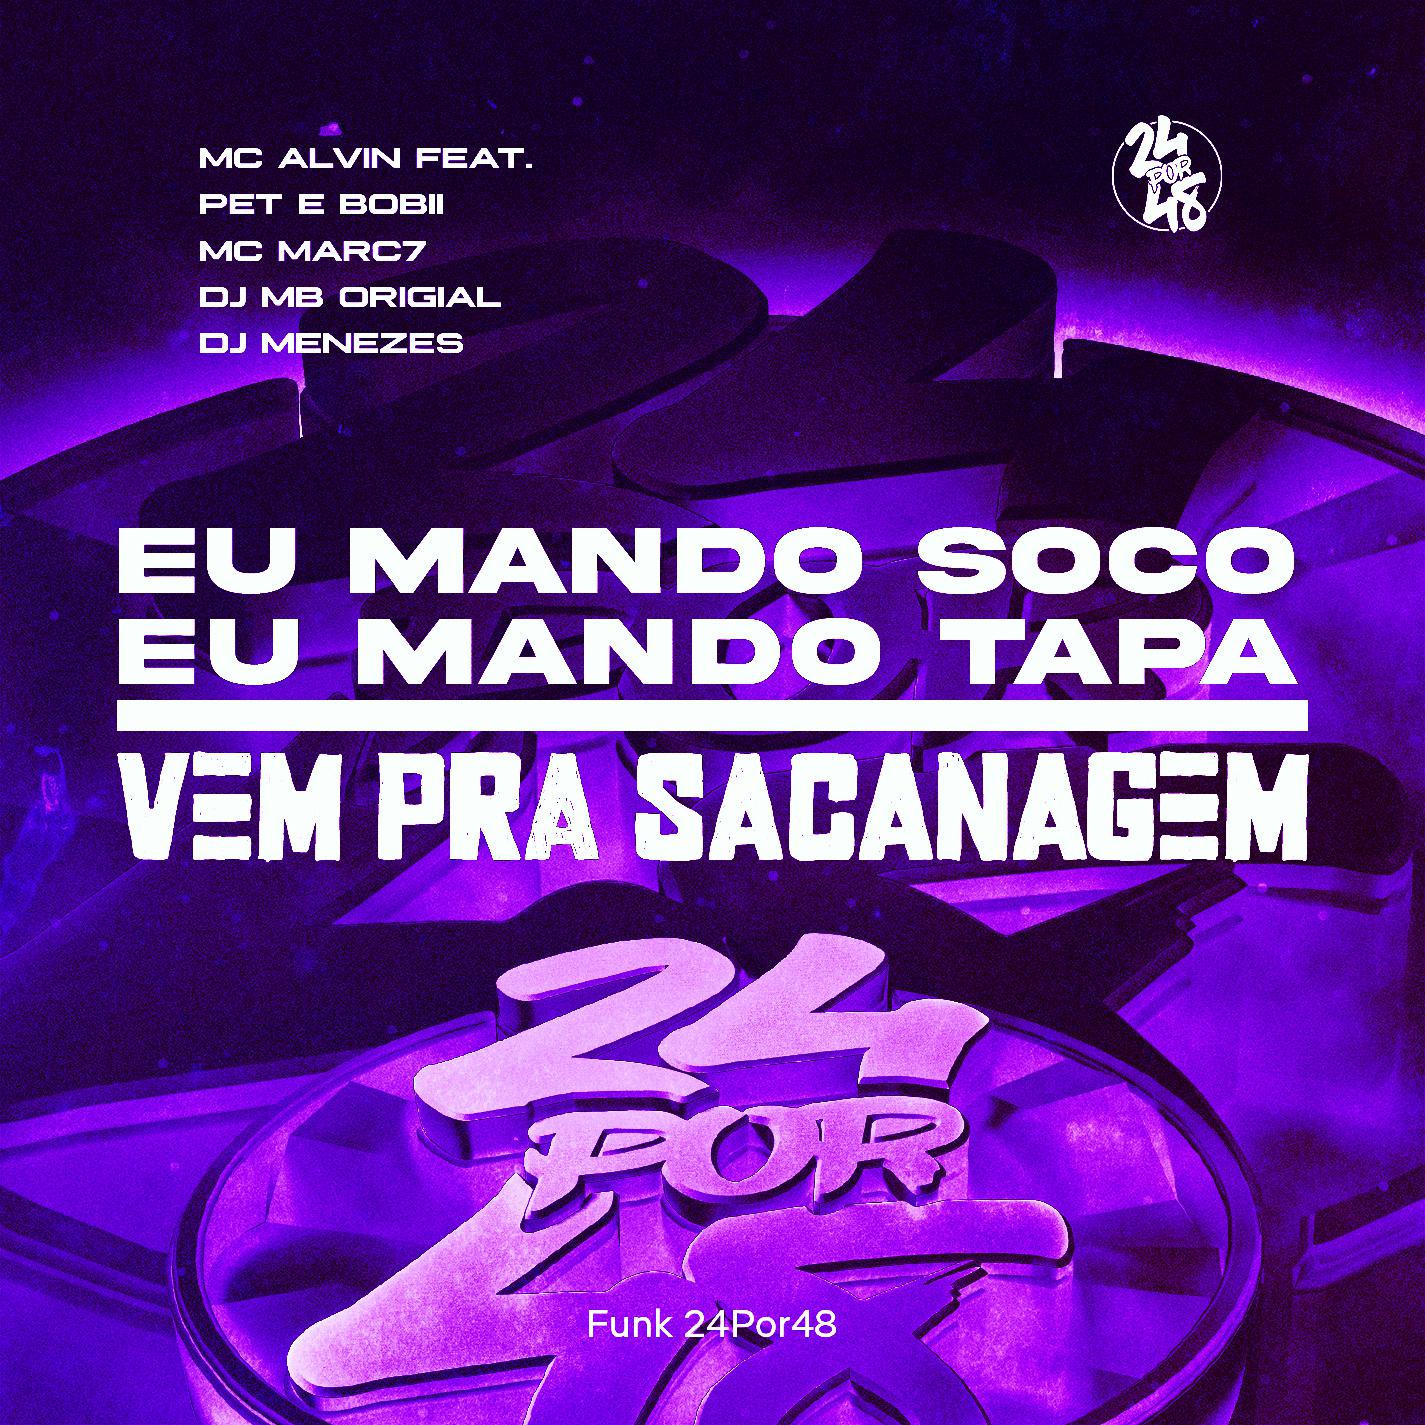 Funk 24Por48 - Eu Mando Soco Eu Mando Tapa, Vem Pra Sacanagem (feat. Pet & Bobii & MC Marc7)